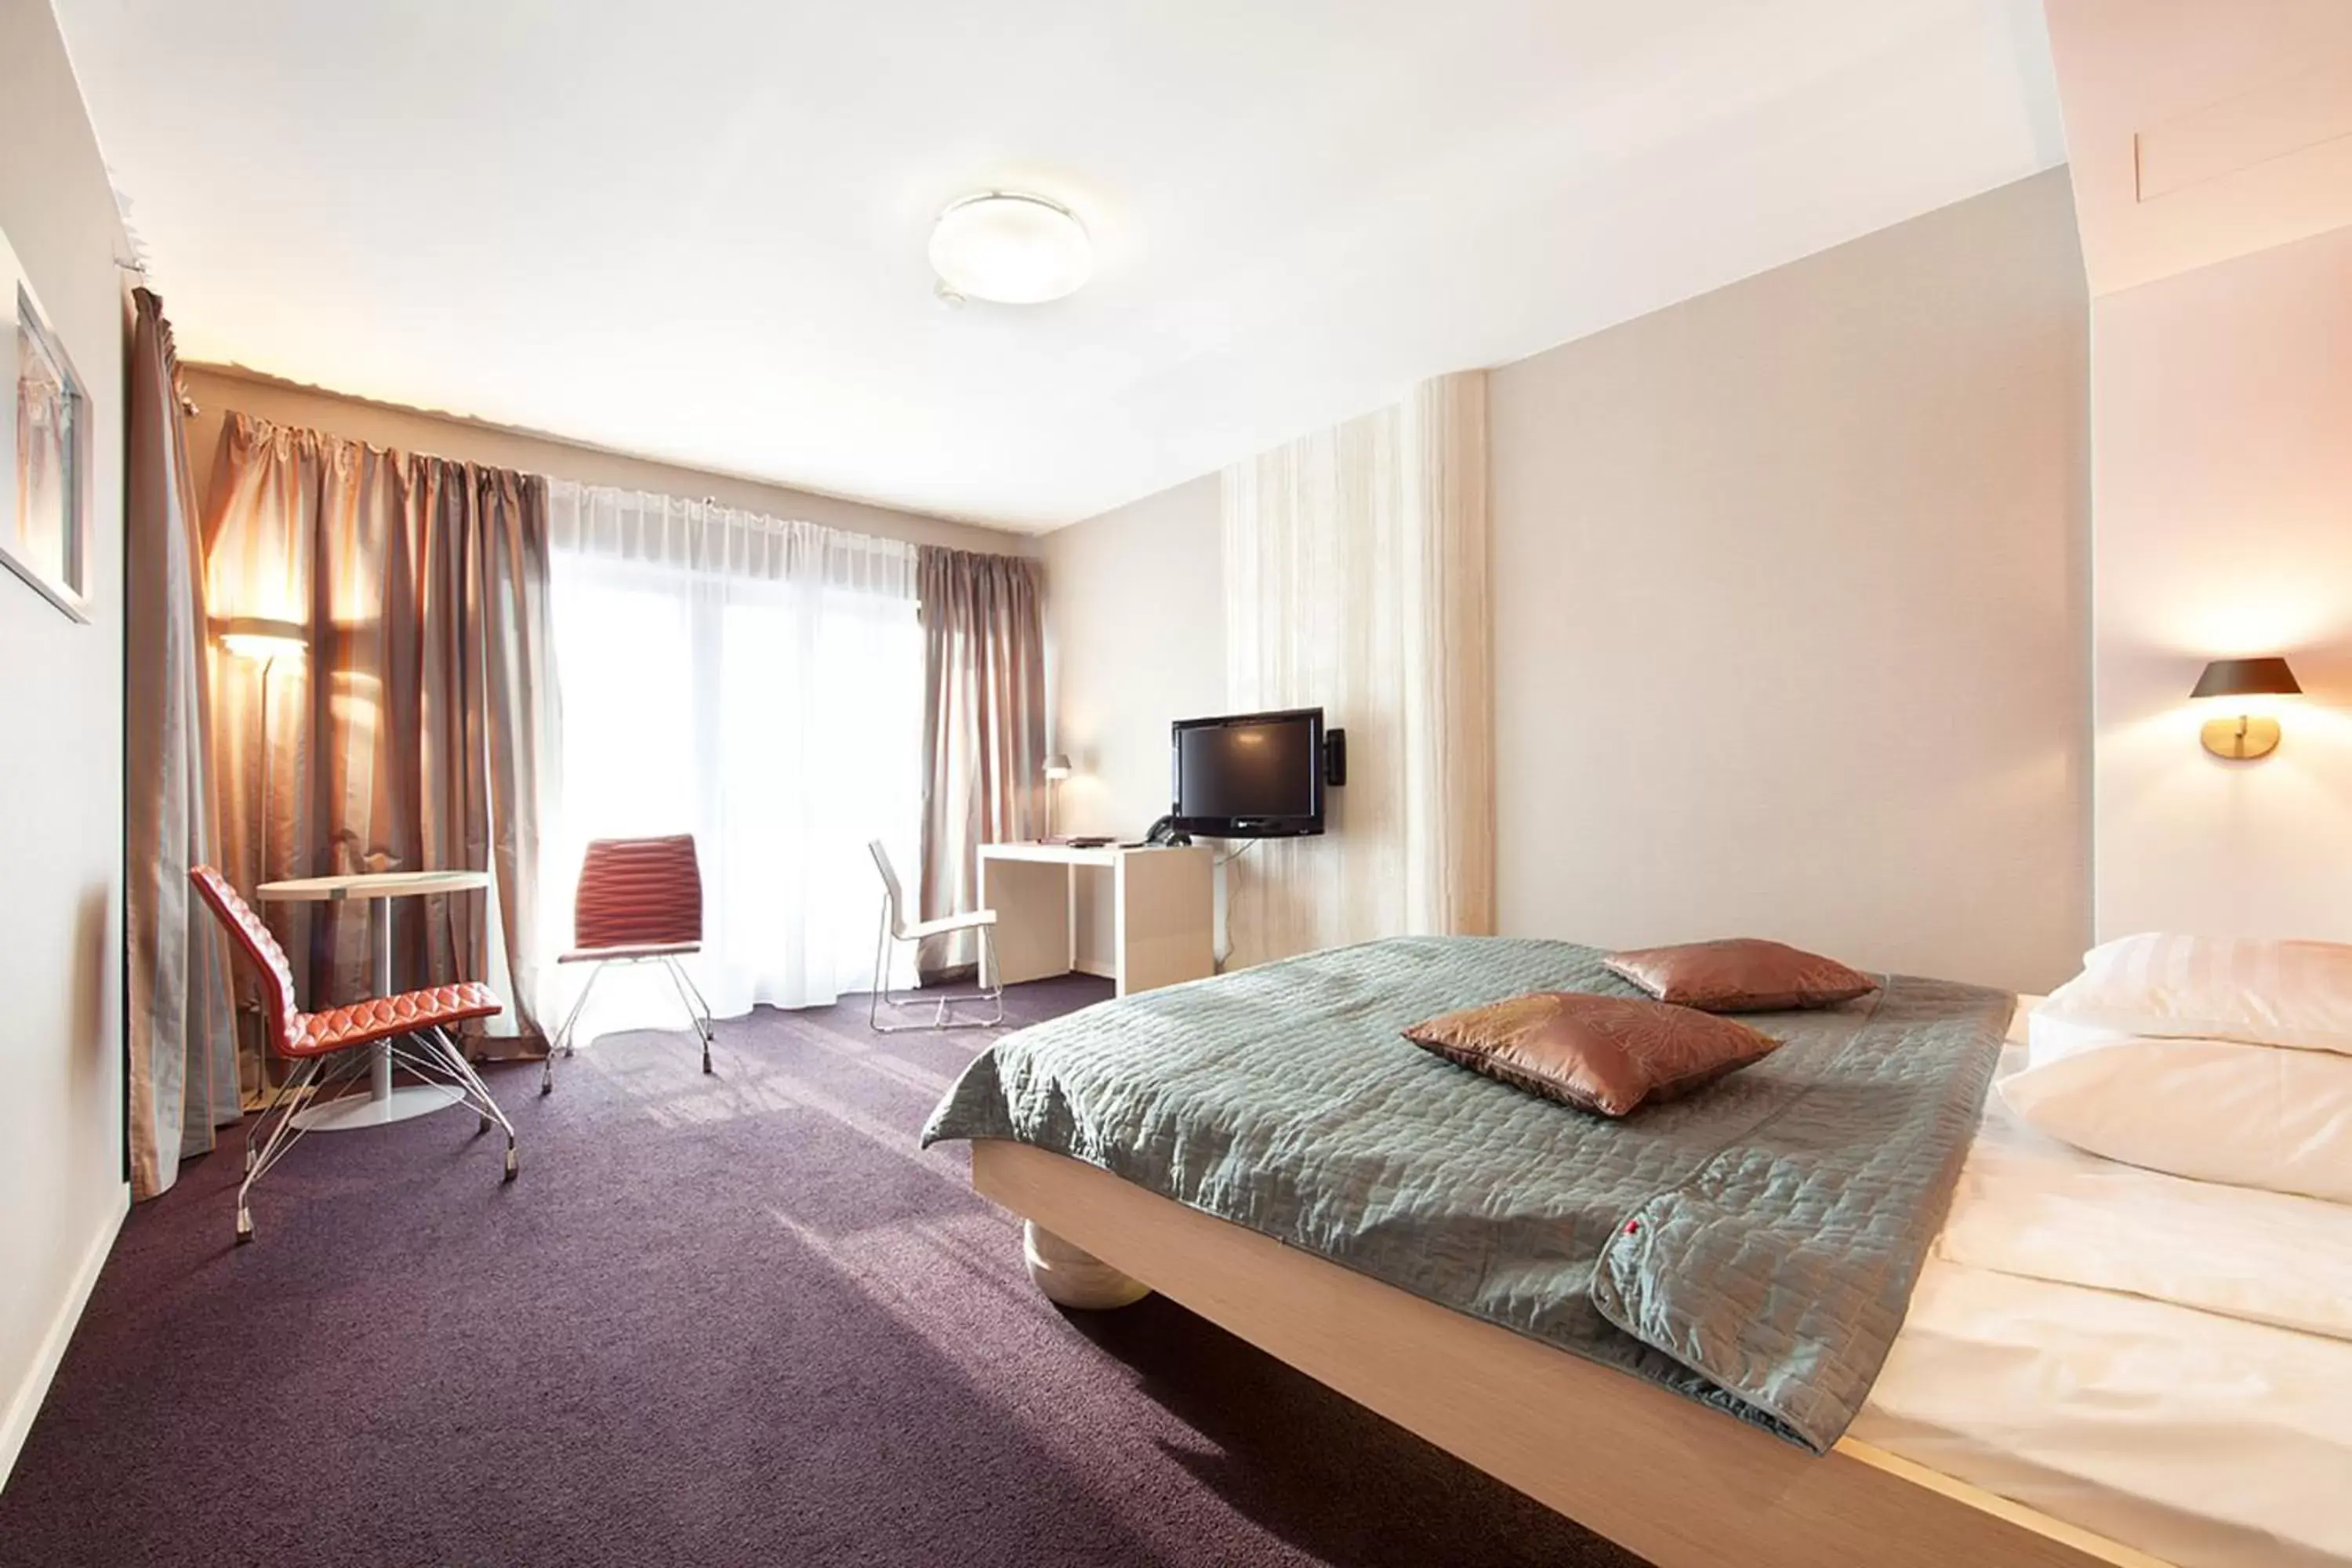 Bed, Room Photo in Niebieski Art Hotel & Spa